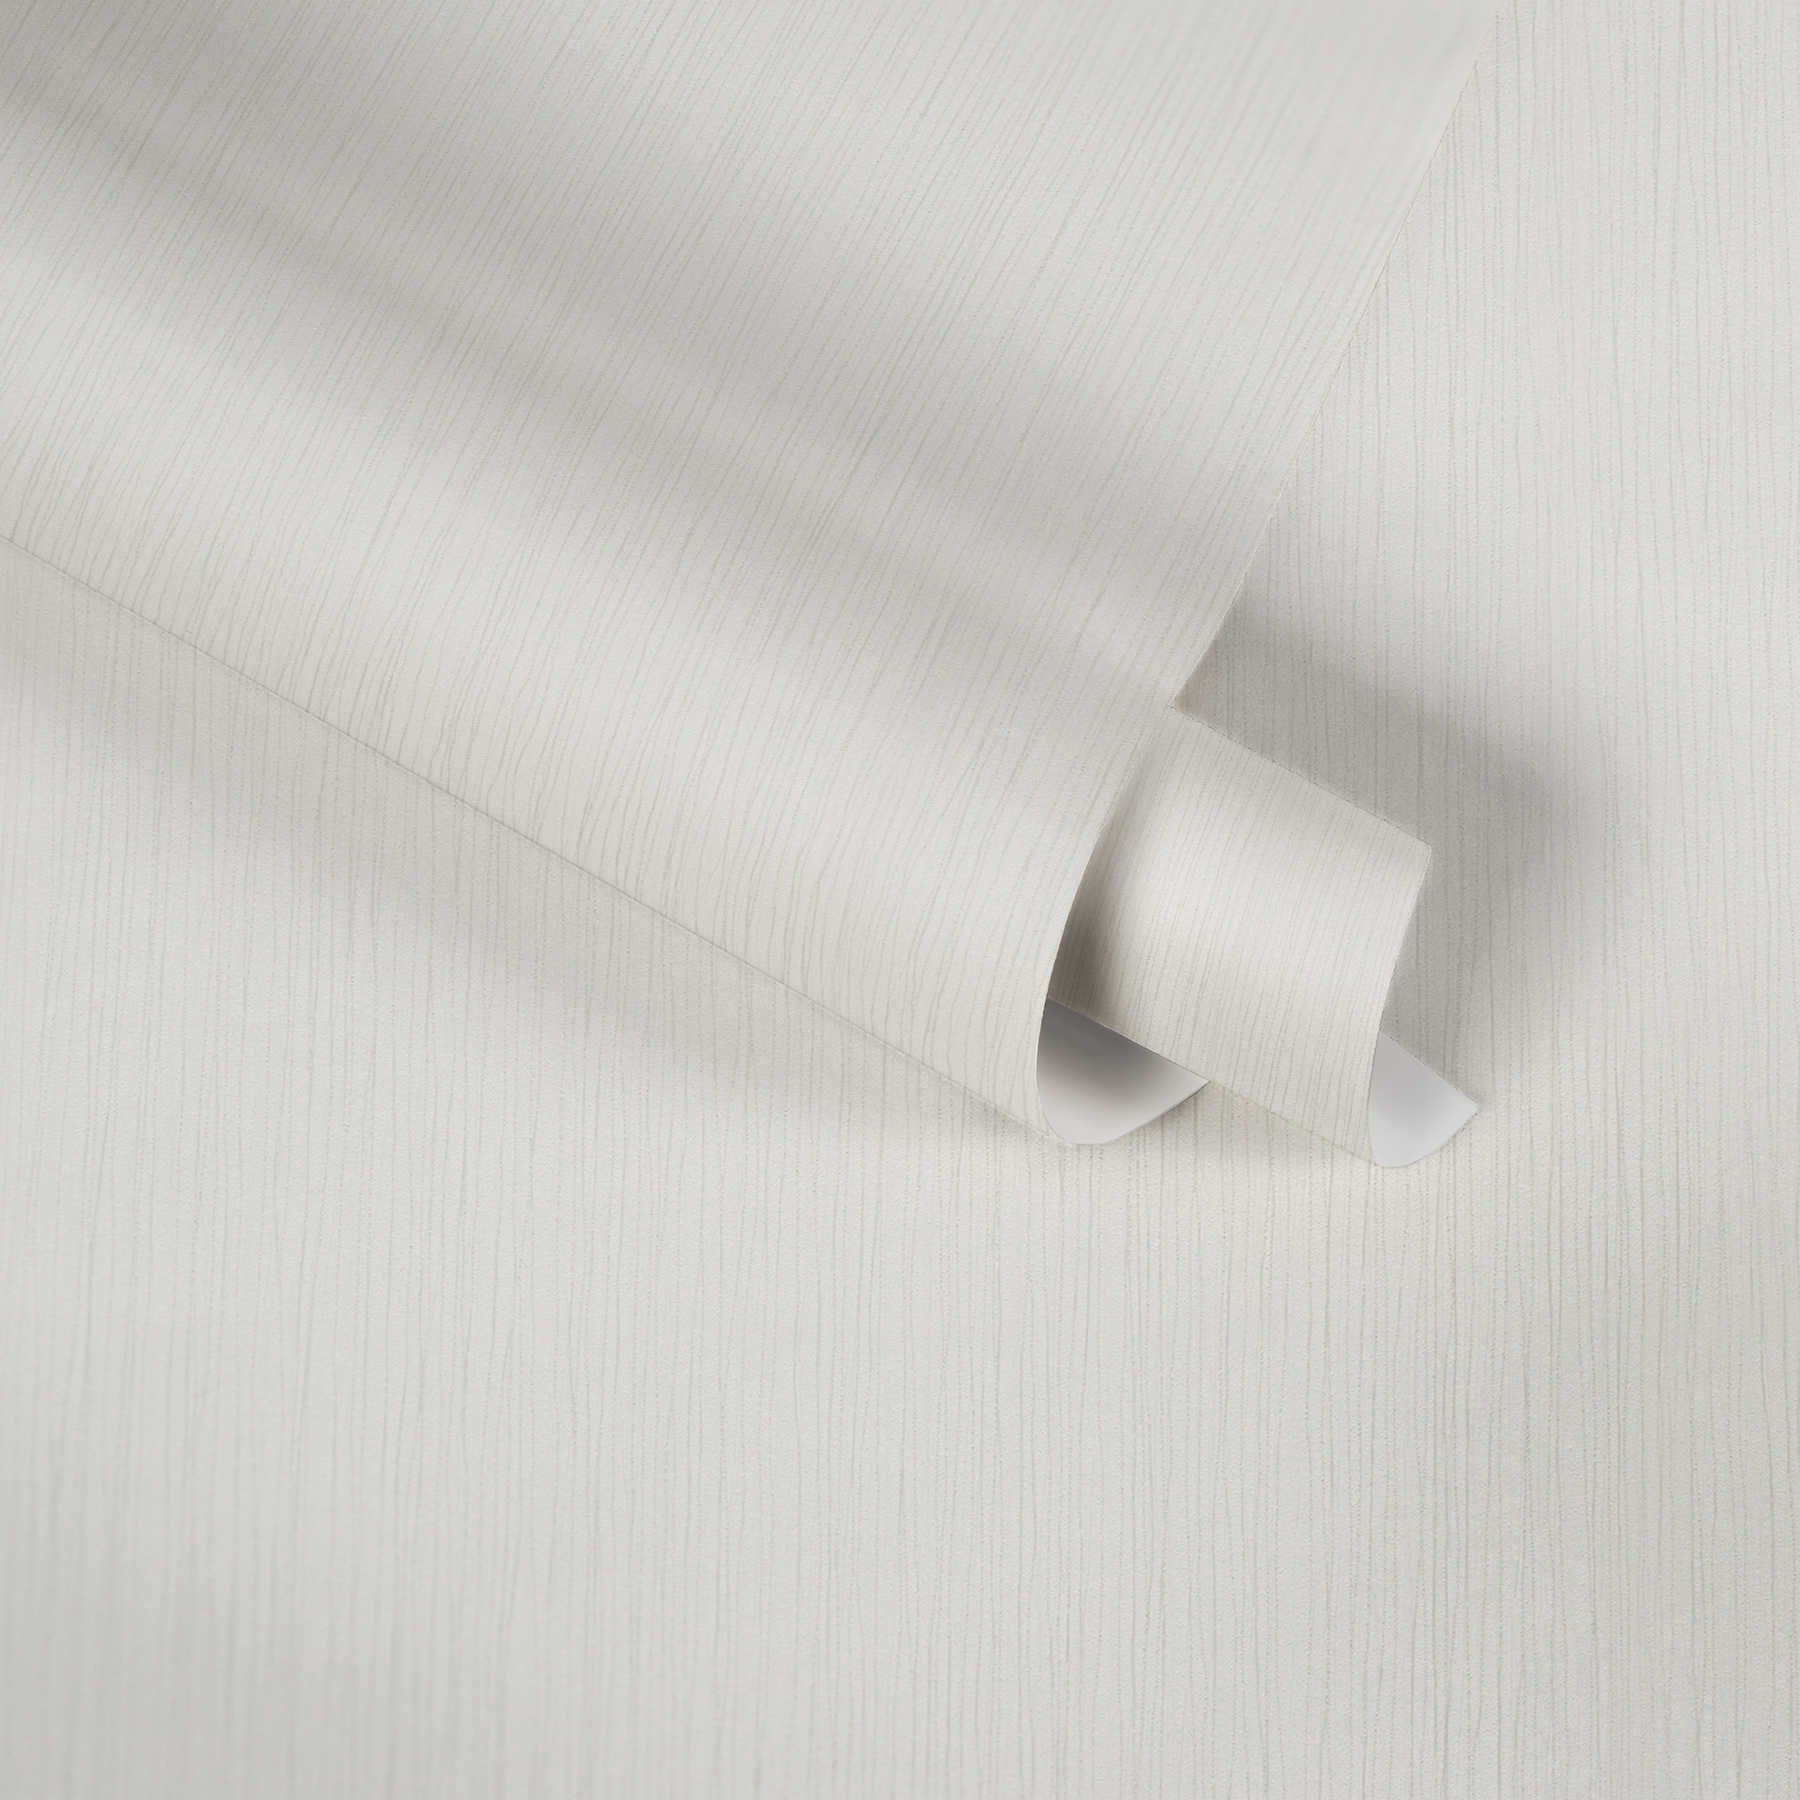             Wit Behang Metallic Glans & Gevoerd Structuurpatroon
        